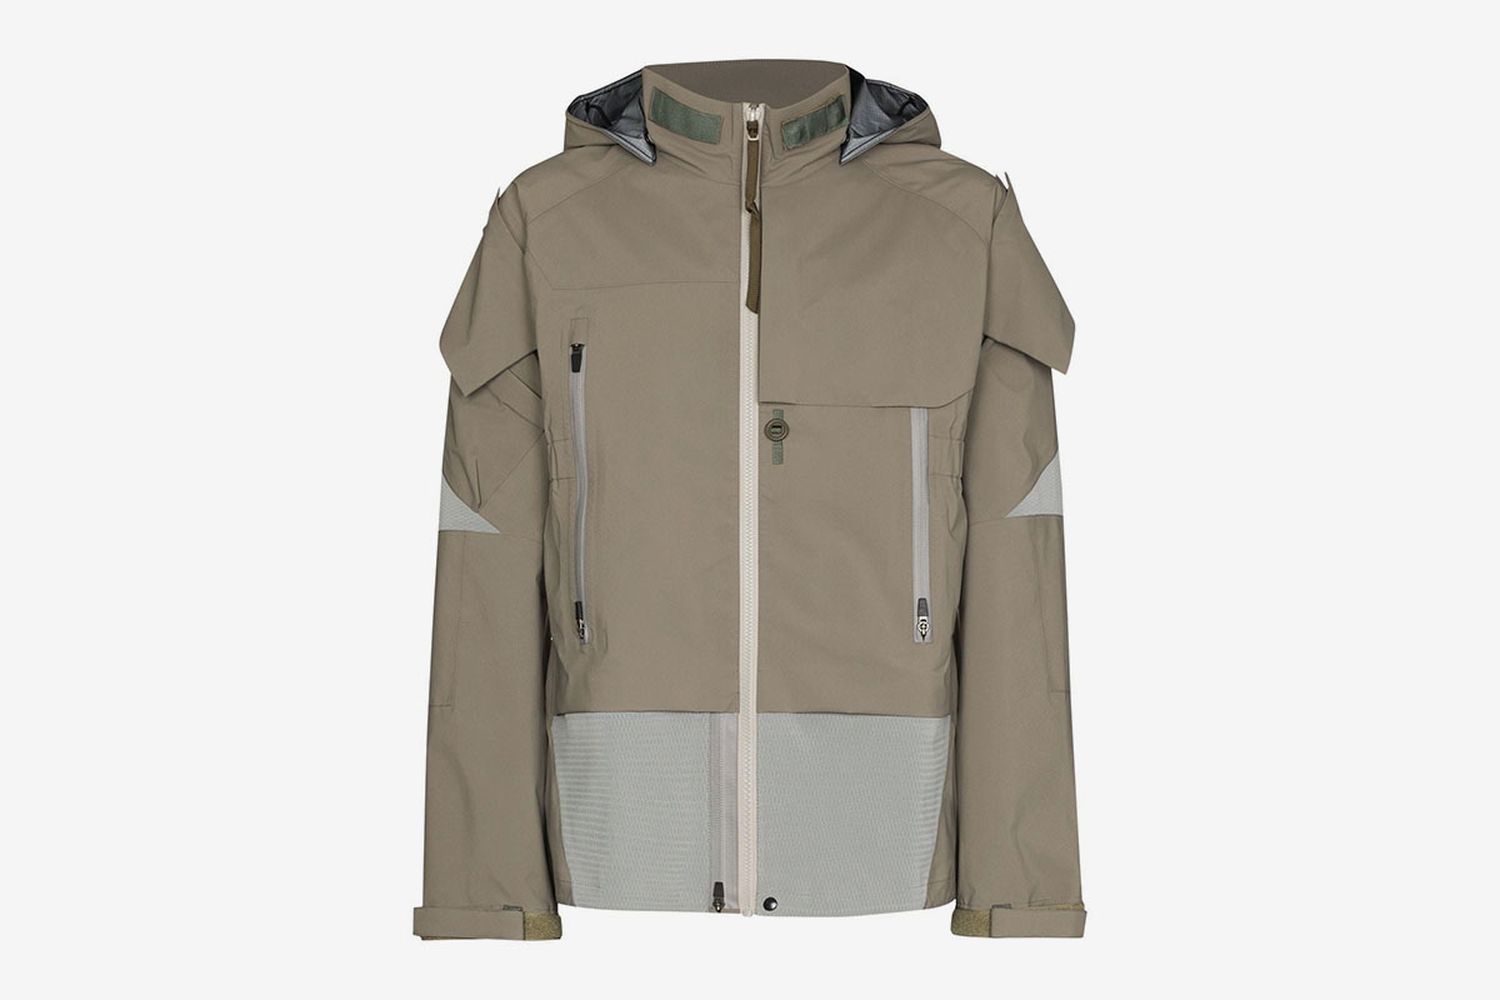 3L Gore-Tex® Pro jacket